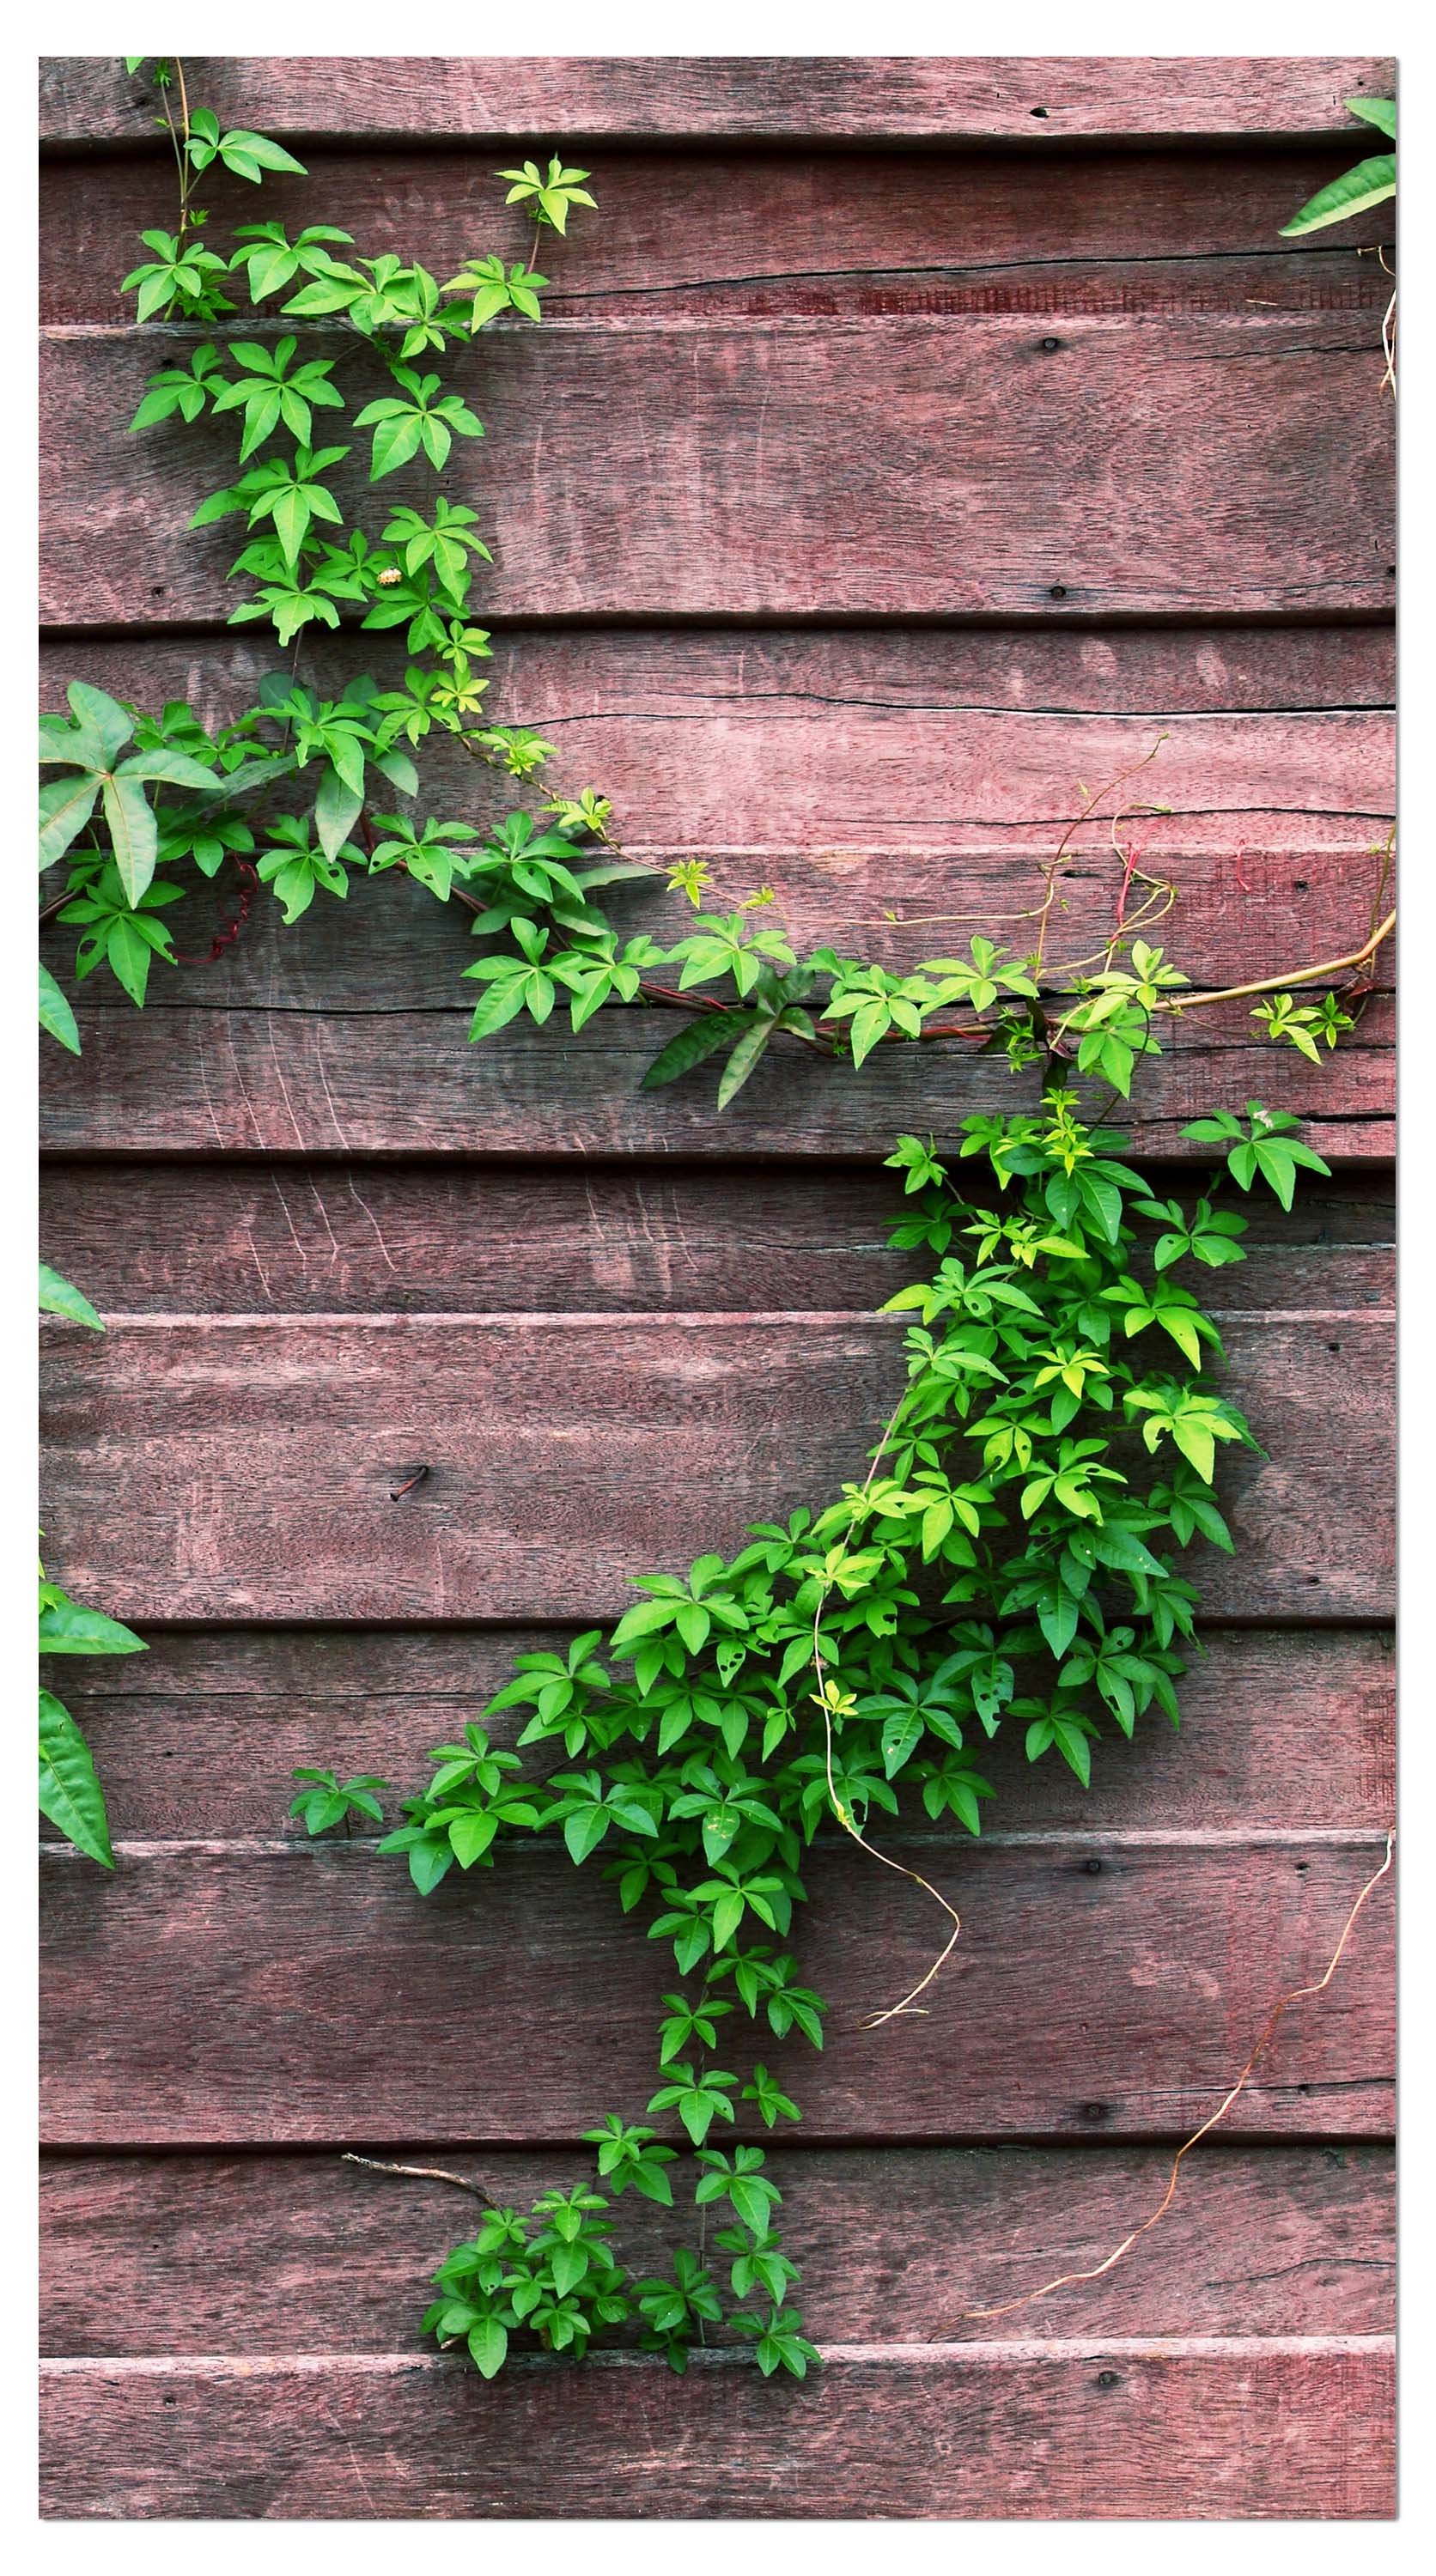 Garderobe Wand mit Kletterpflanze M1004 entdecken - Bild 4